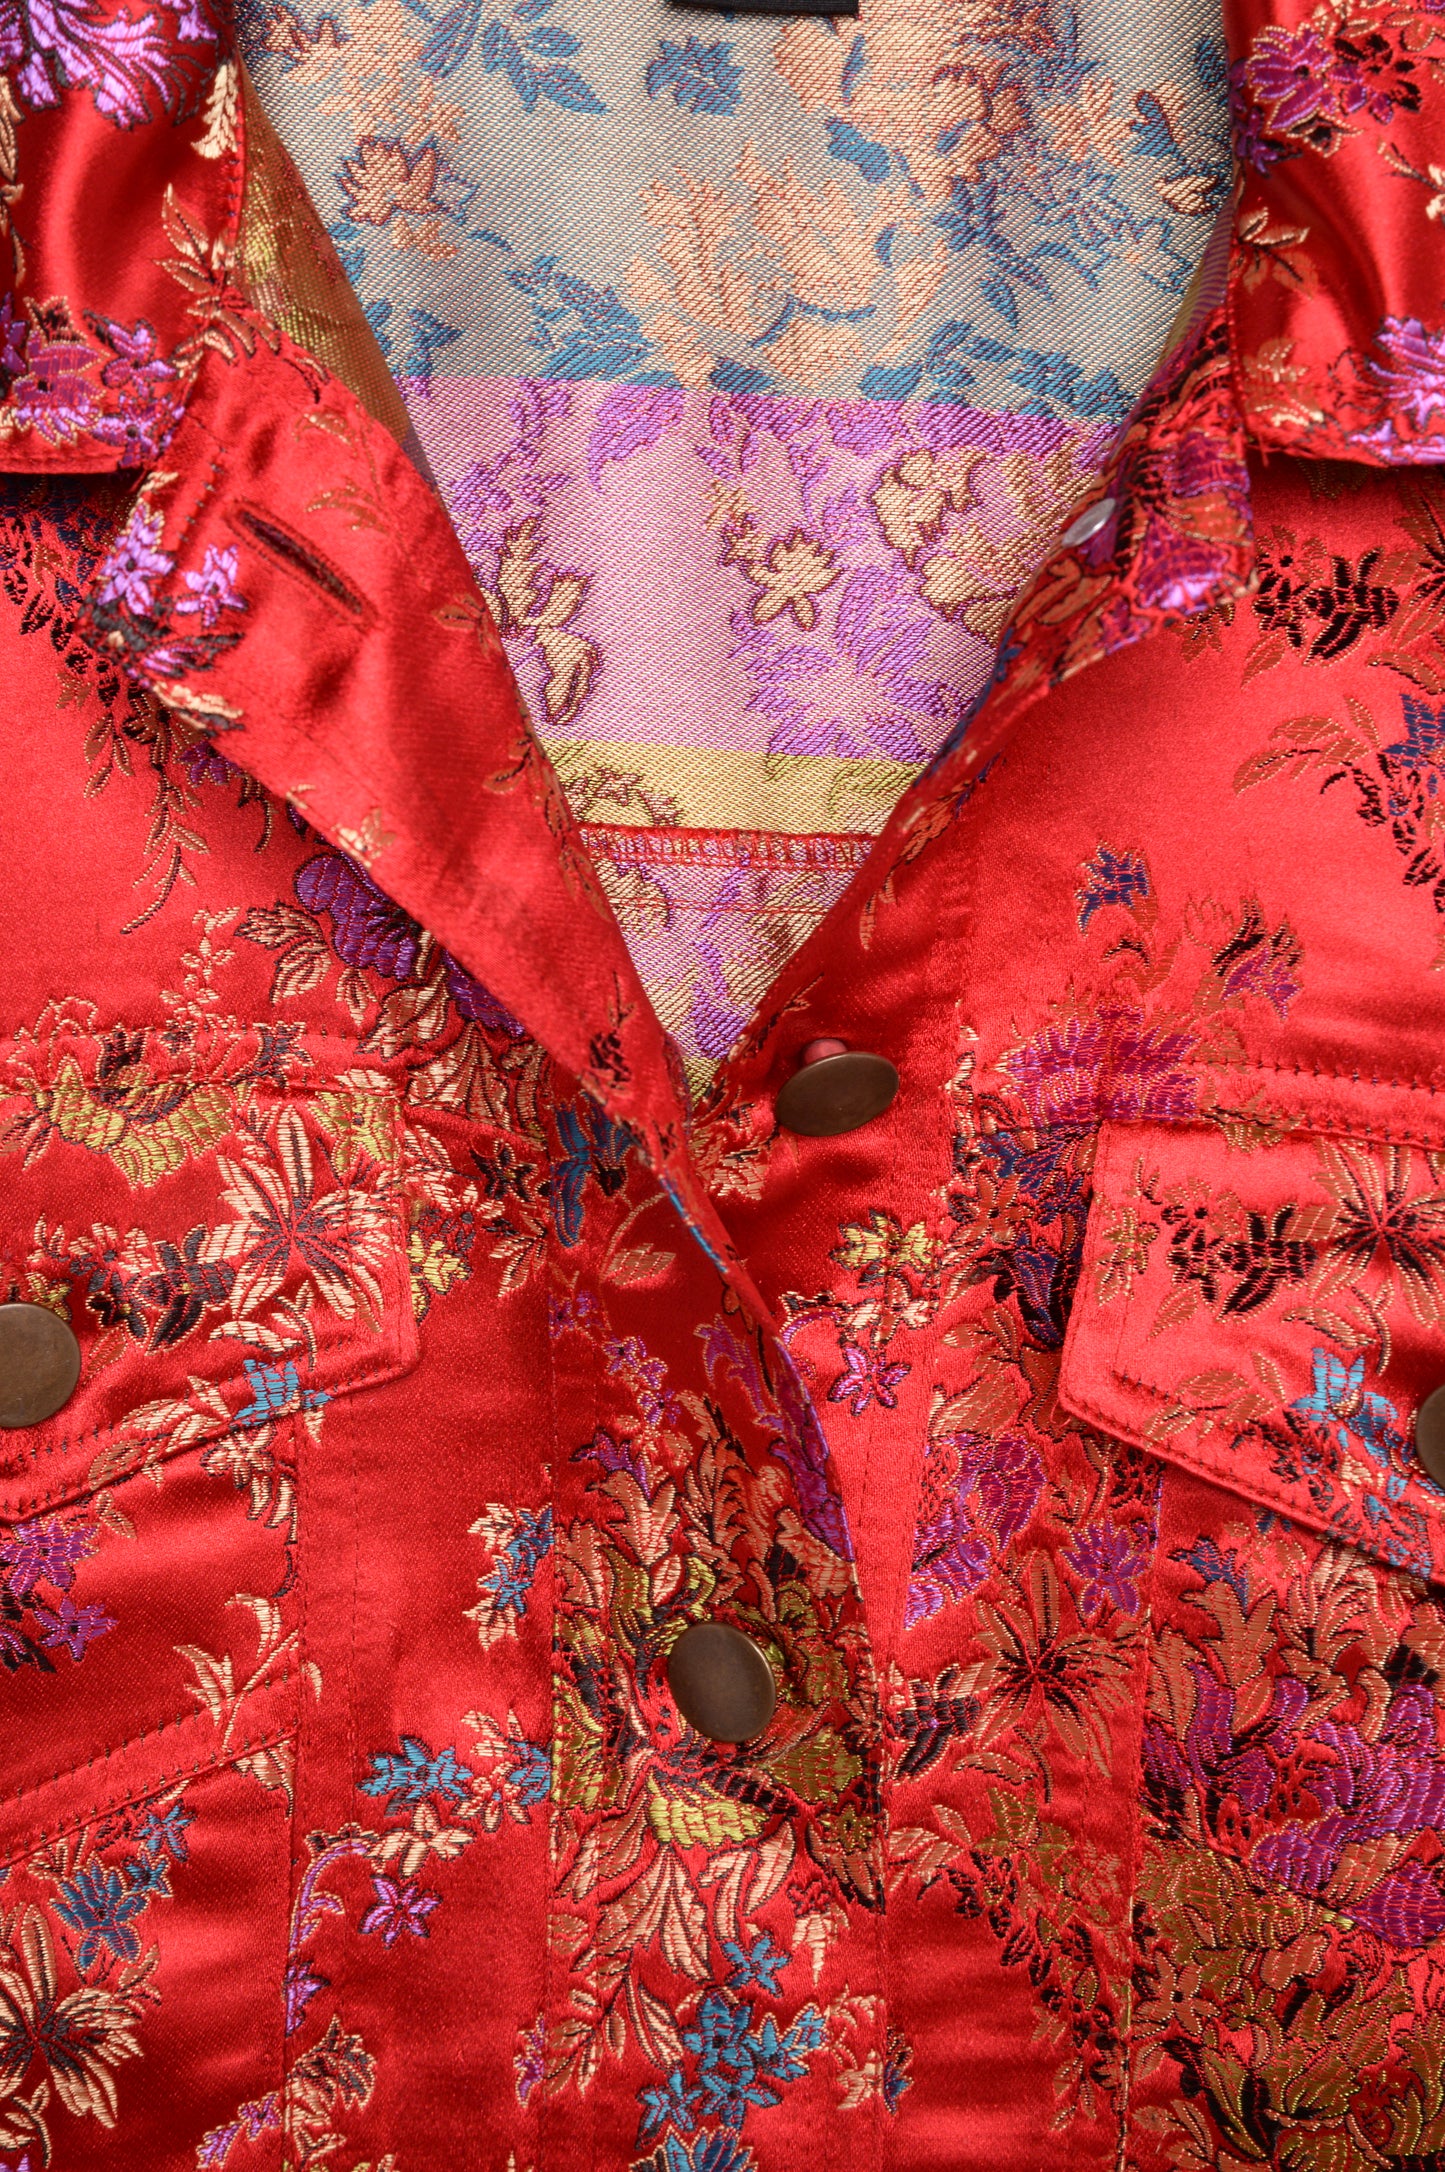 Y2K Floral Embroidered Satin Jacket